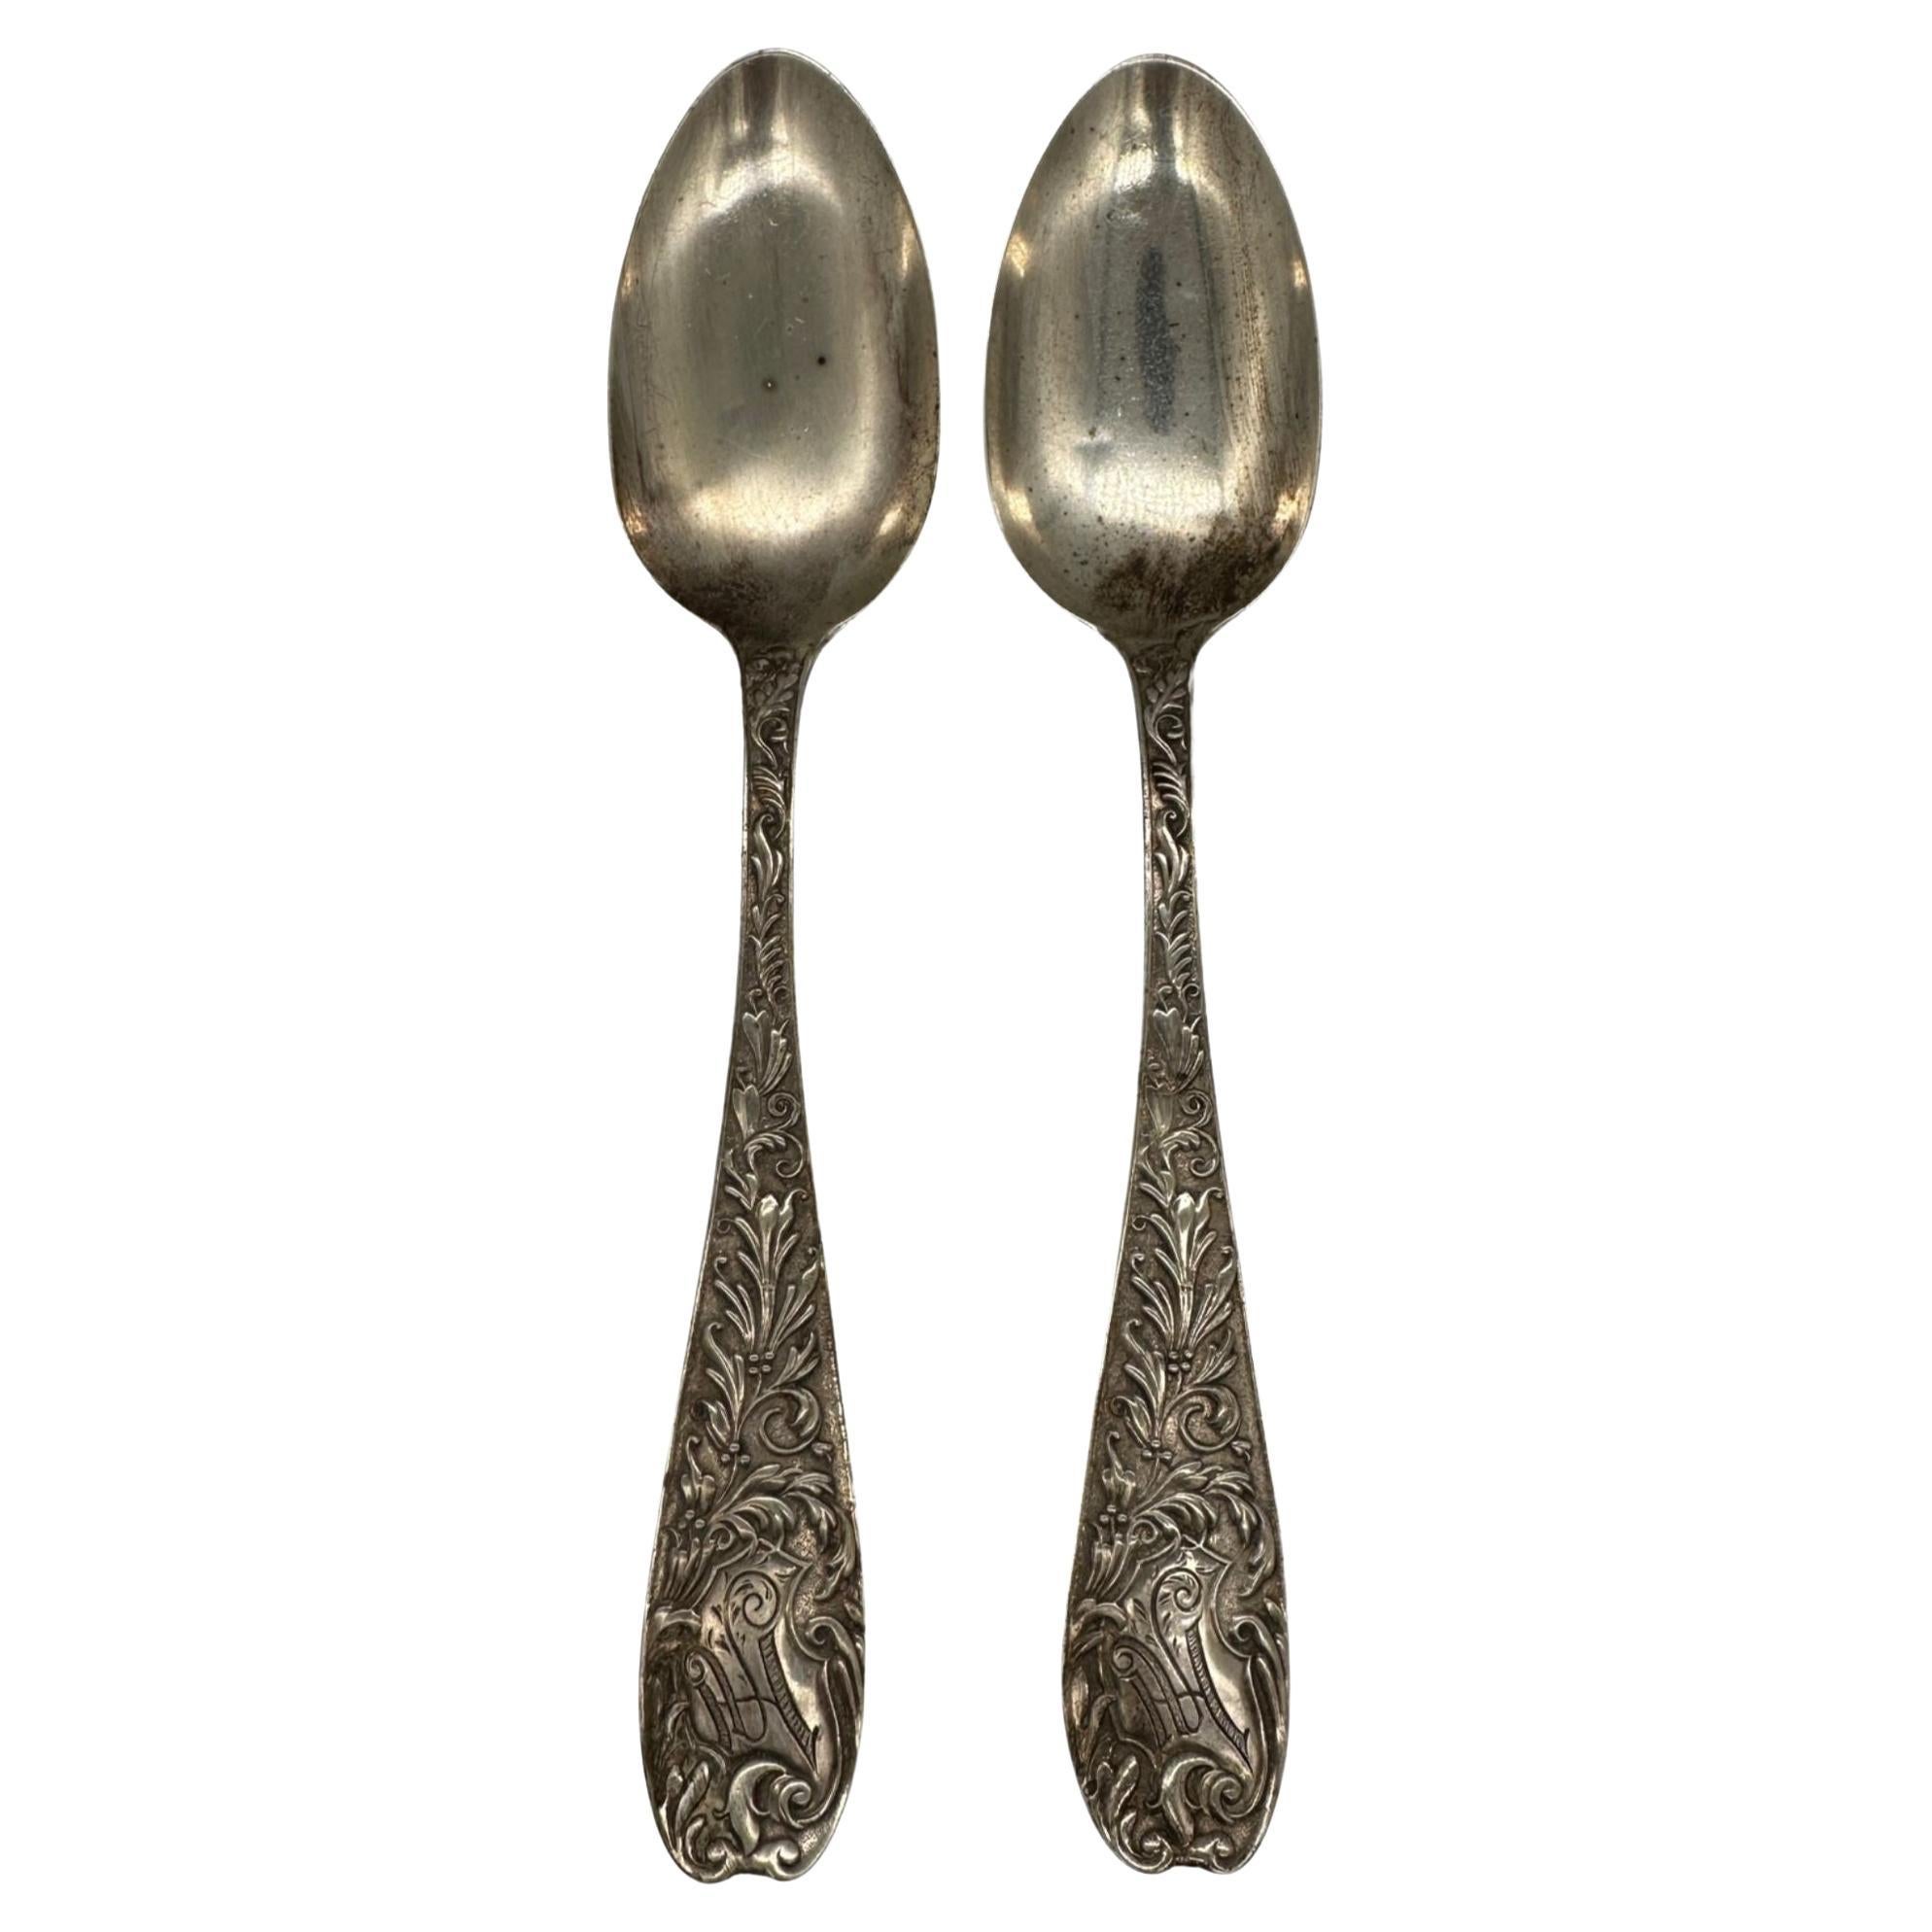 J D & S M Knowles Co Sterling Silver Serving Spoon Aeolian Pattern, 1882